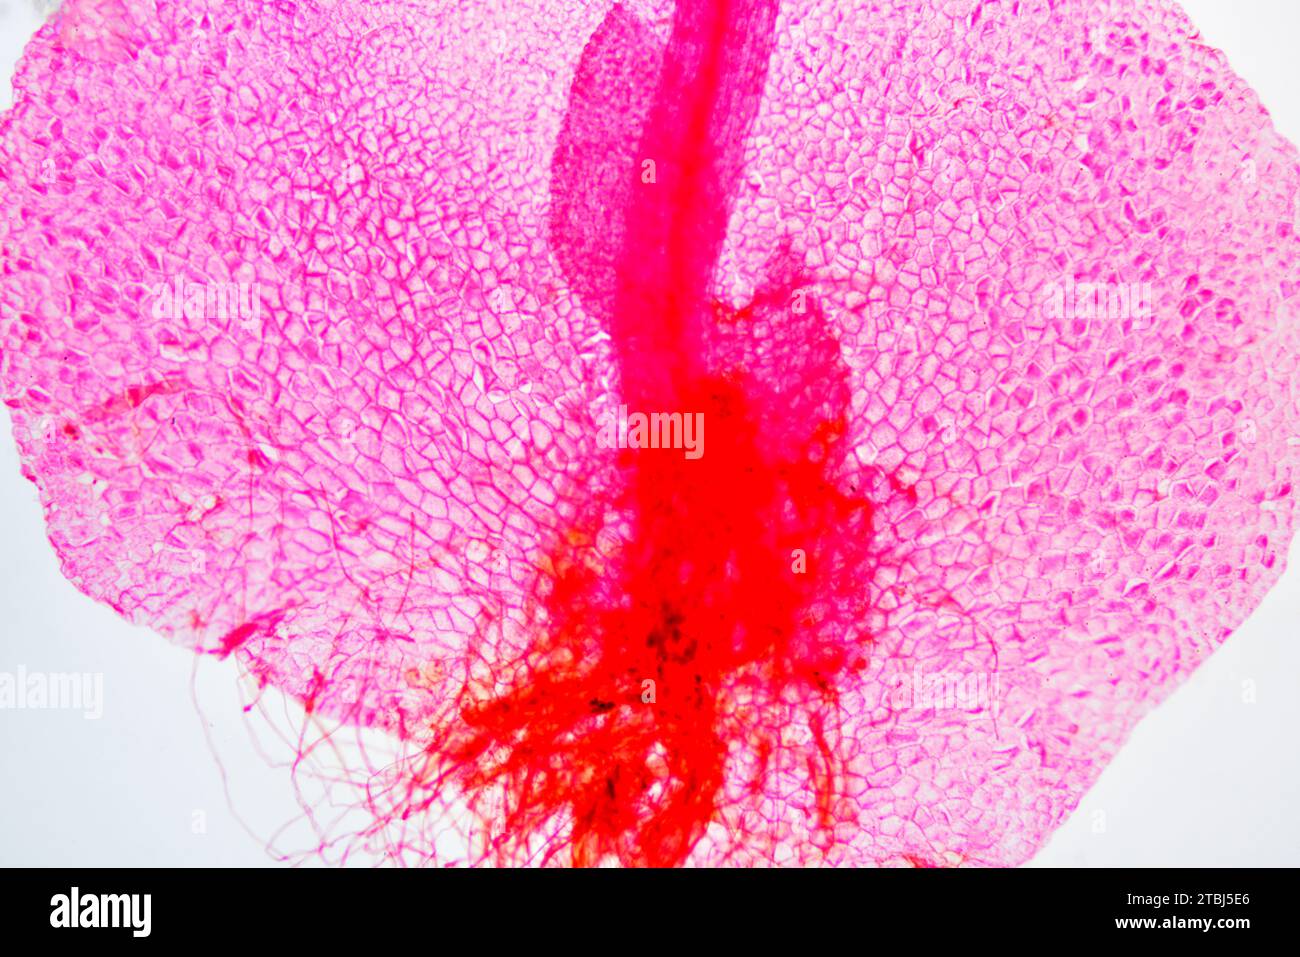 Fern prothallus or prothallium with rizoids. Optical microscope X40. Stock Photo